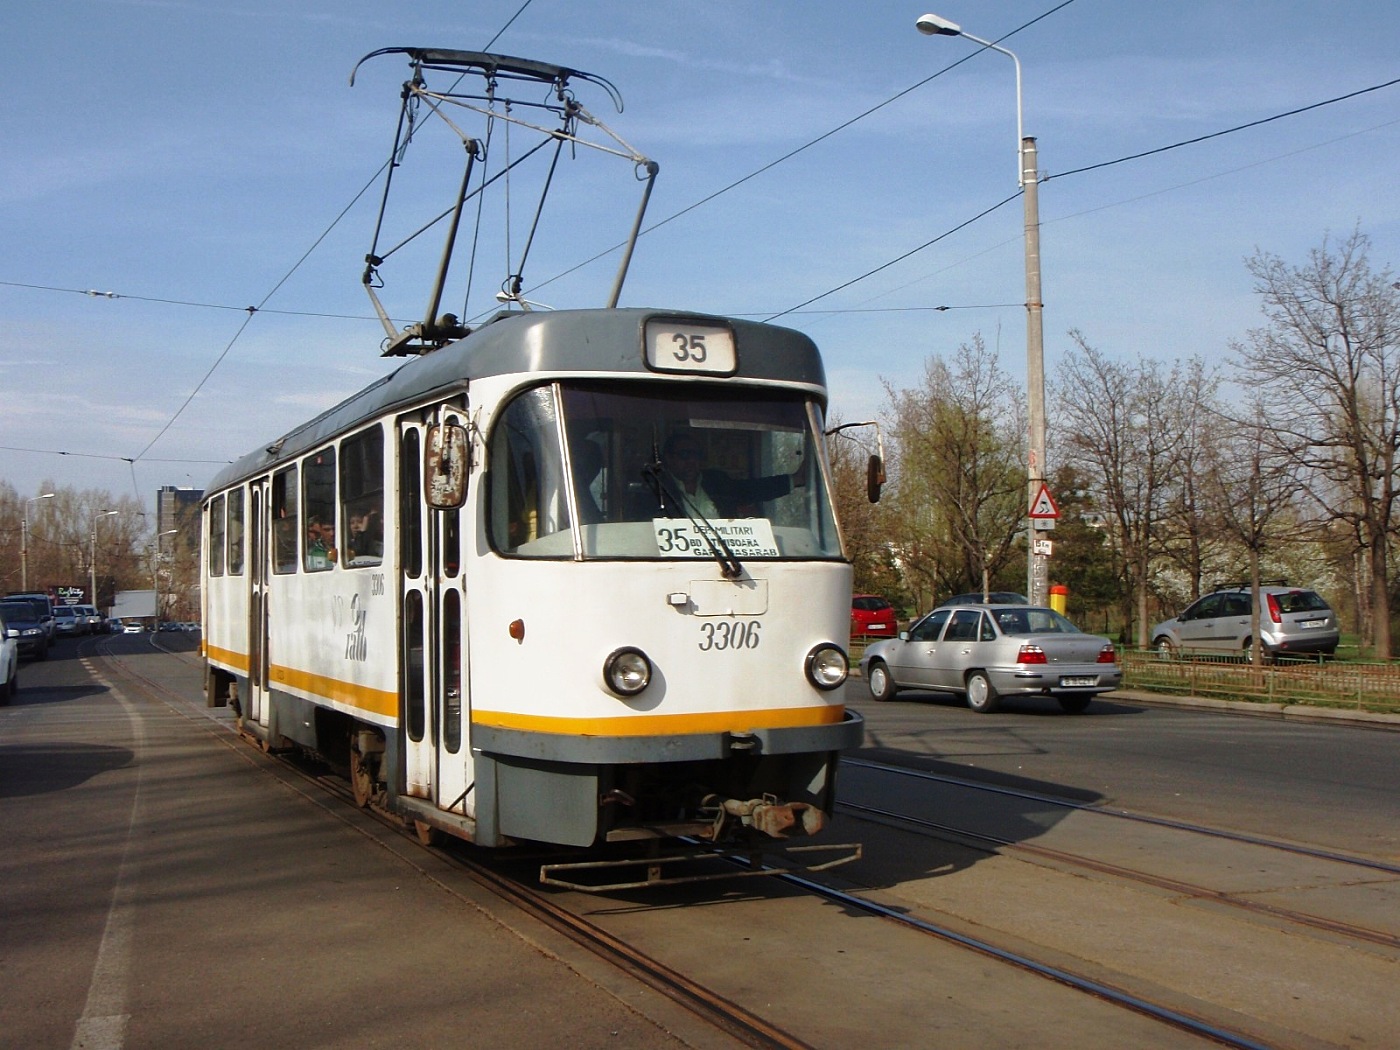 Tatra T4R #3306